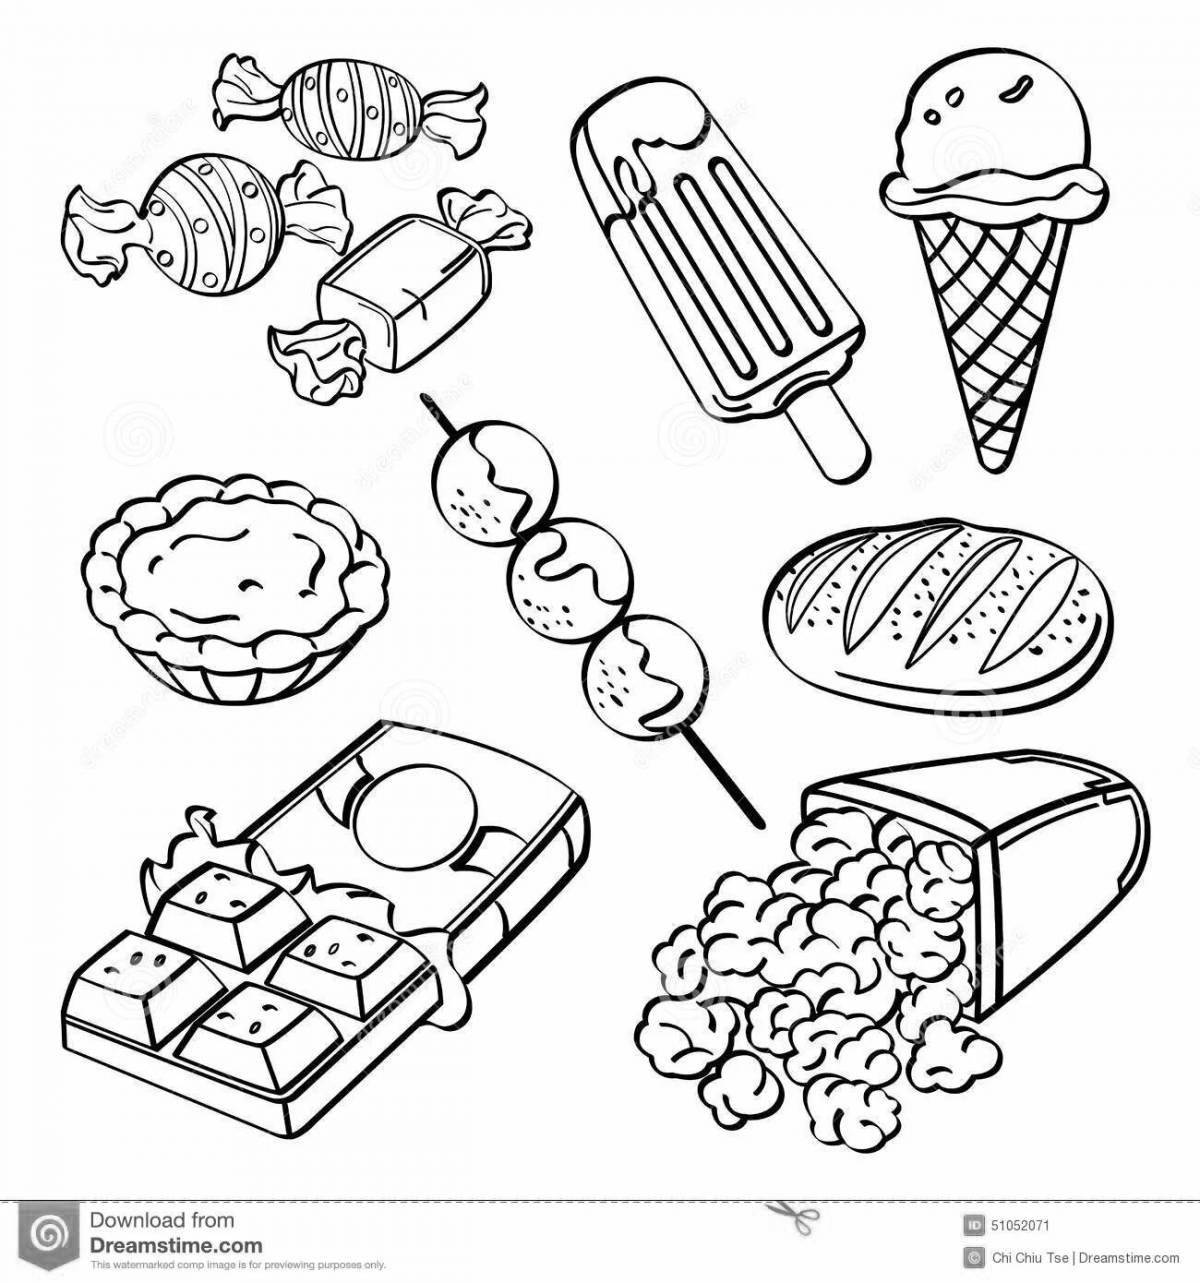 Low sugar healthy food coloring page